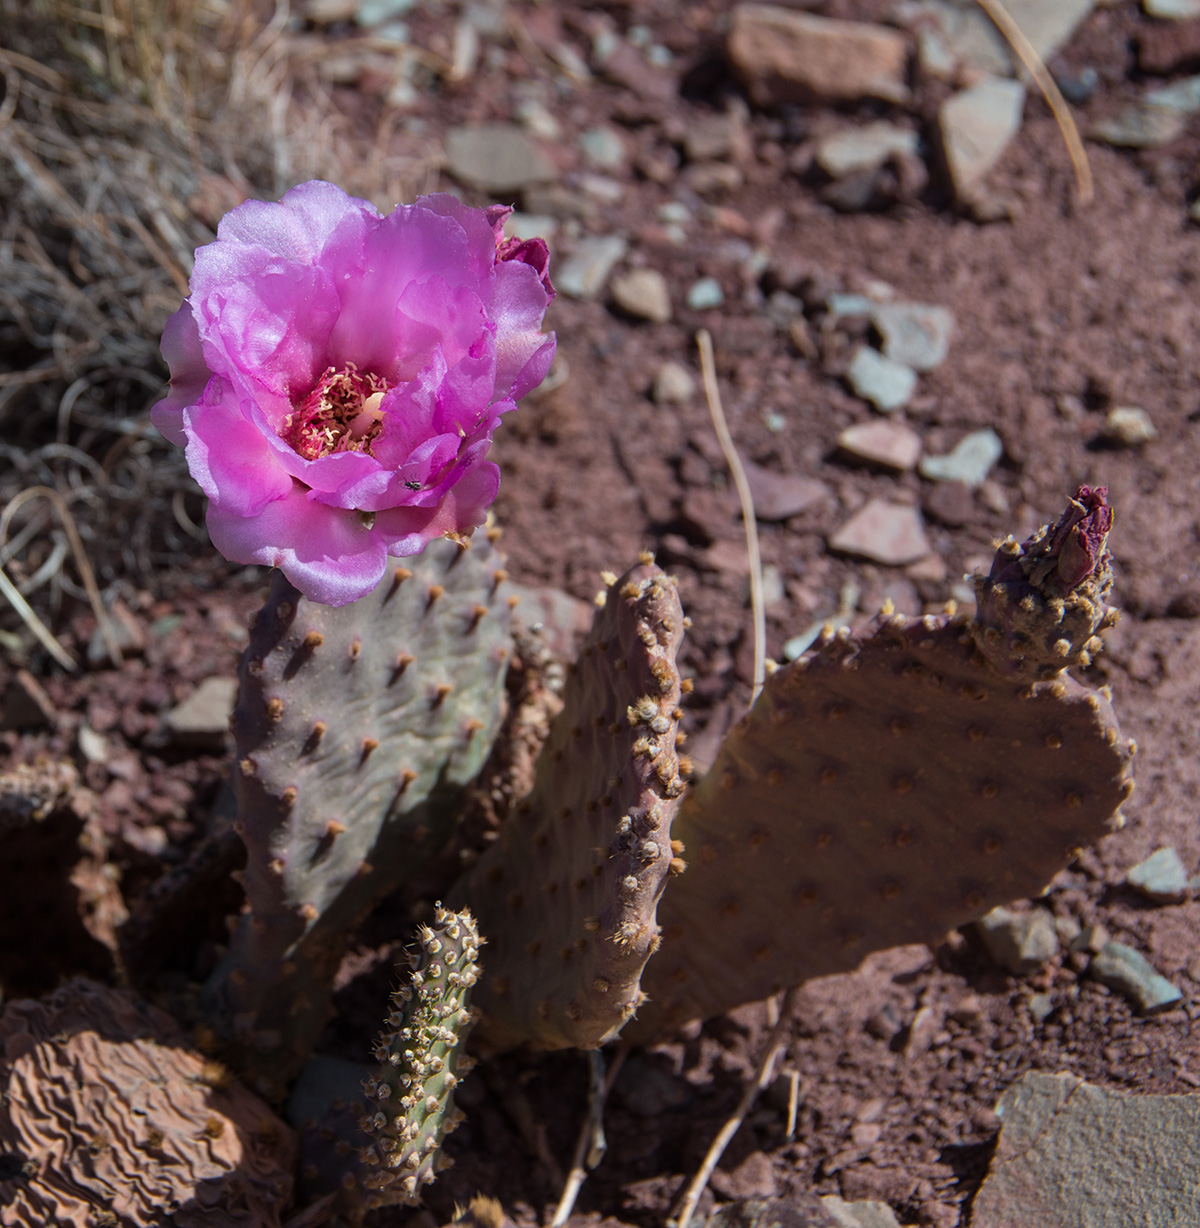 IMGP4208 - pink hedgehog cactus.jpg